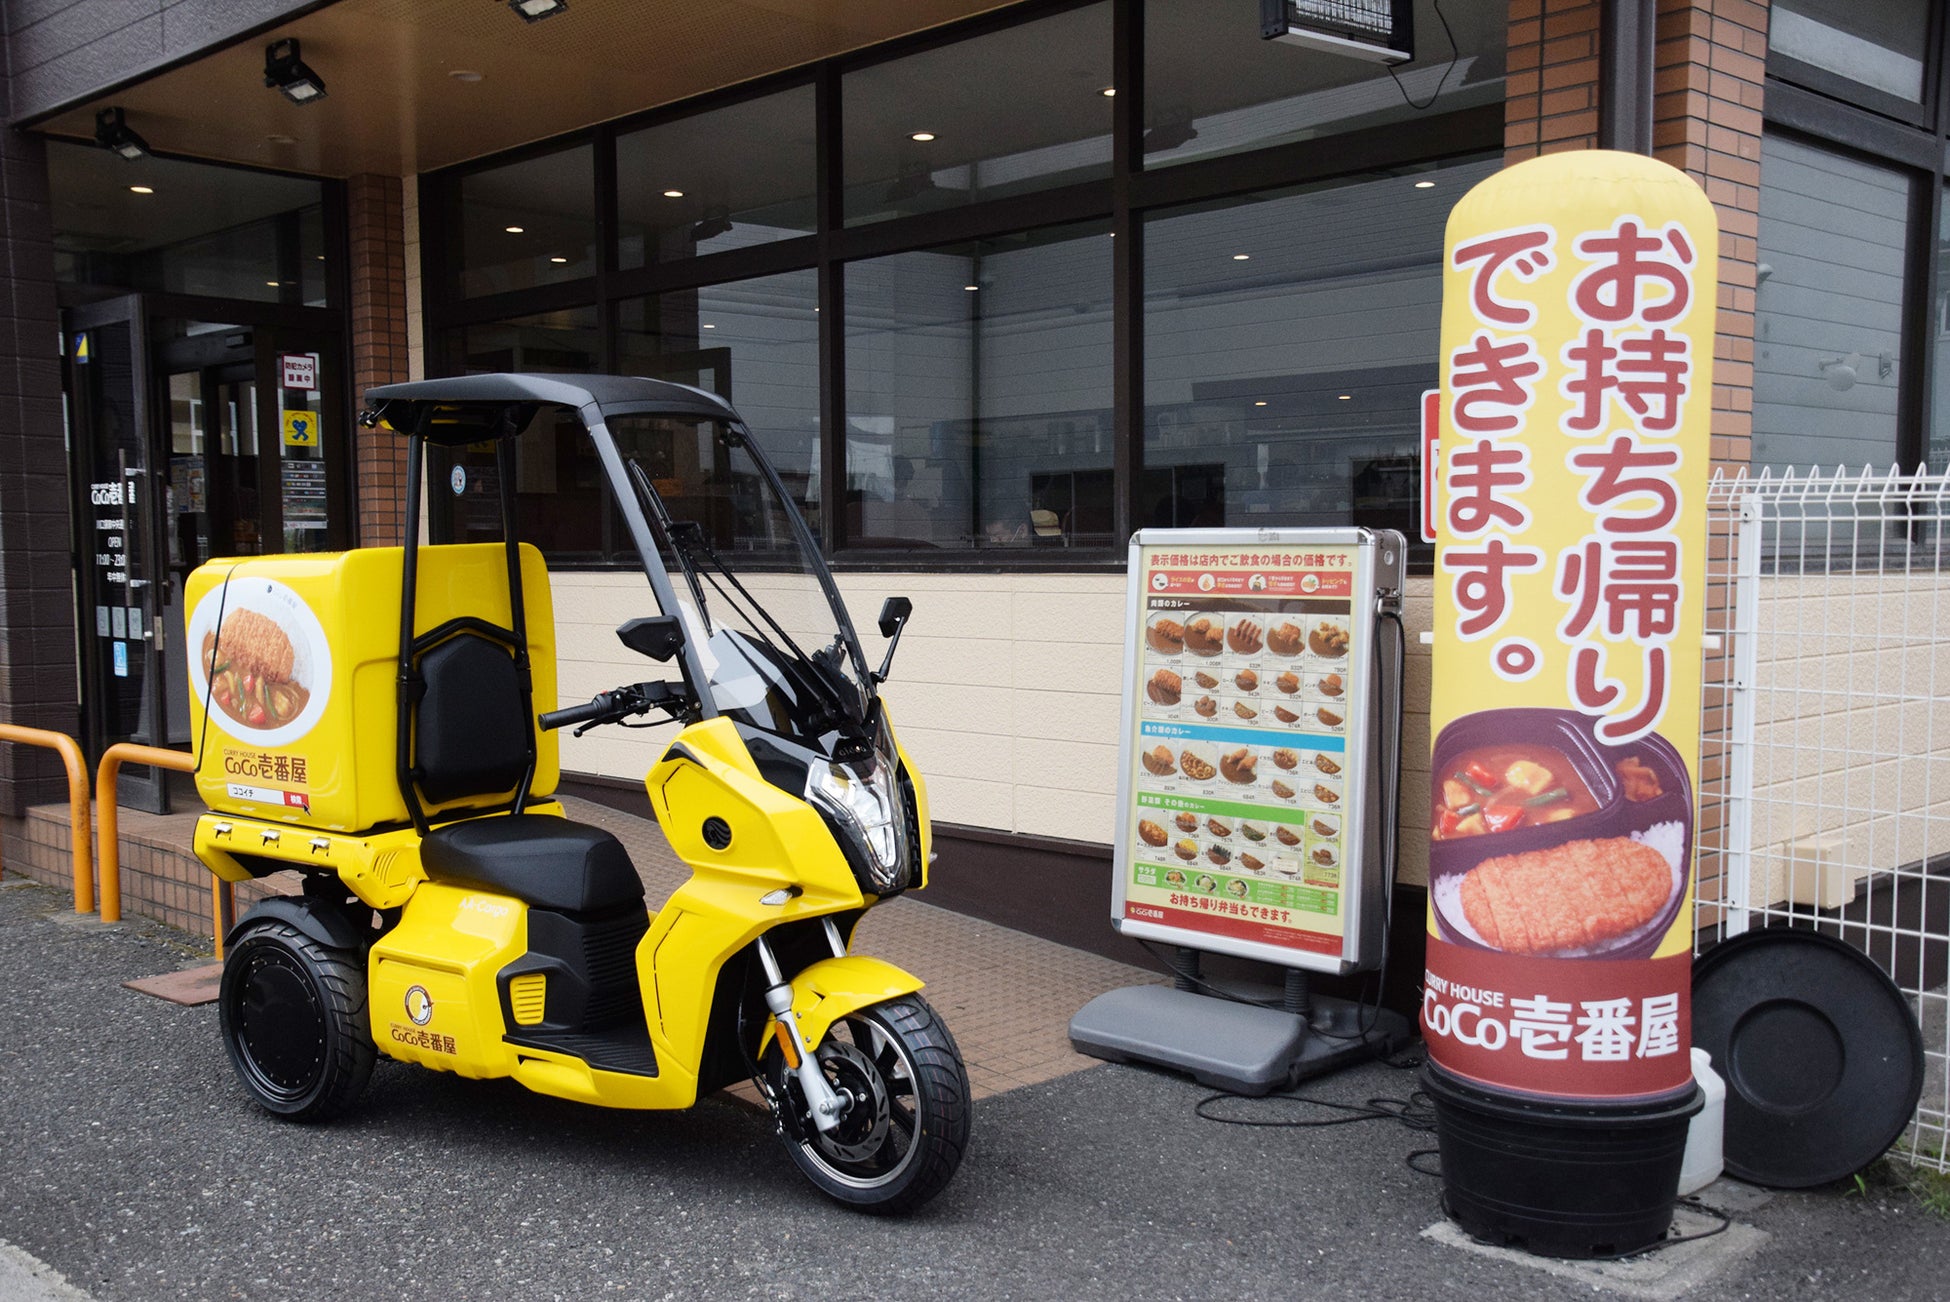 カレーハウスCoCo壱番屋 川口領家中央通り店に、電動3輪バイク「AAカーゴ」を初めて納入のサブ画像2